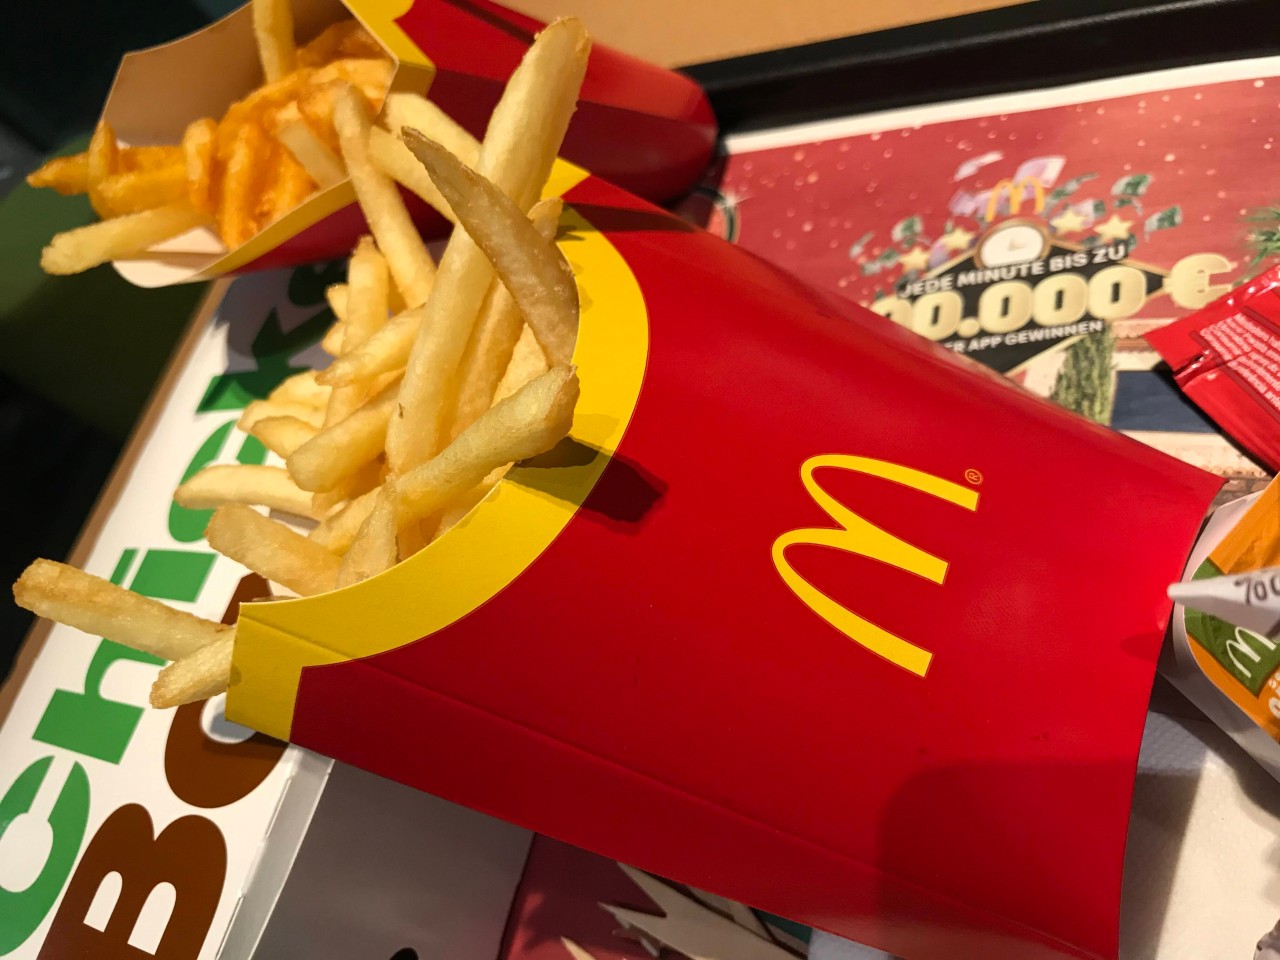 Es gibt einen einfachen Trick, dank dem du immer frische Pommes bei McDonald's bekommst. (Archiv)